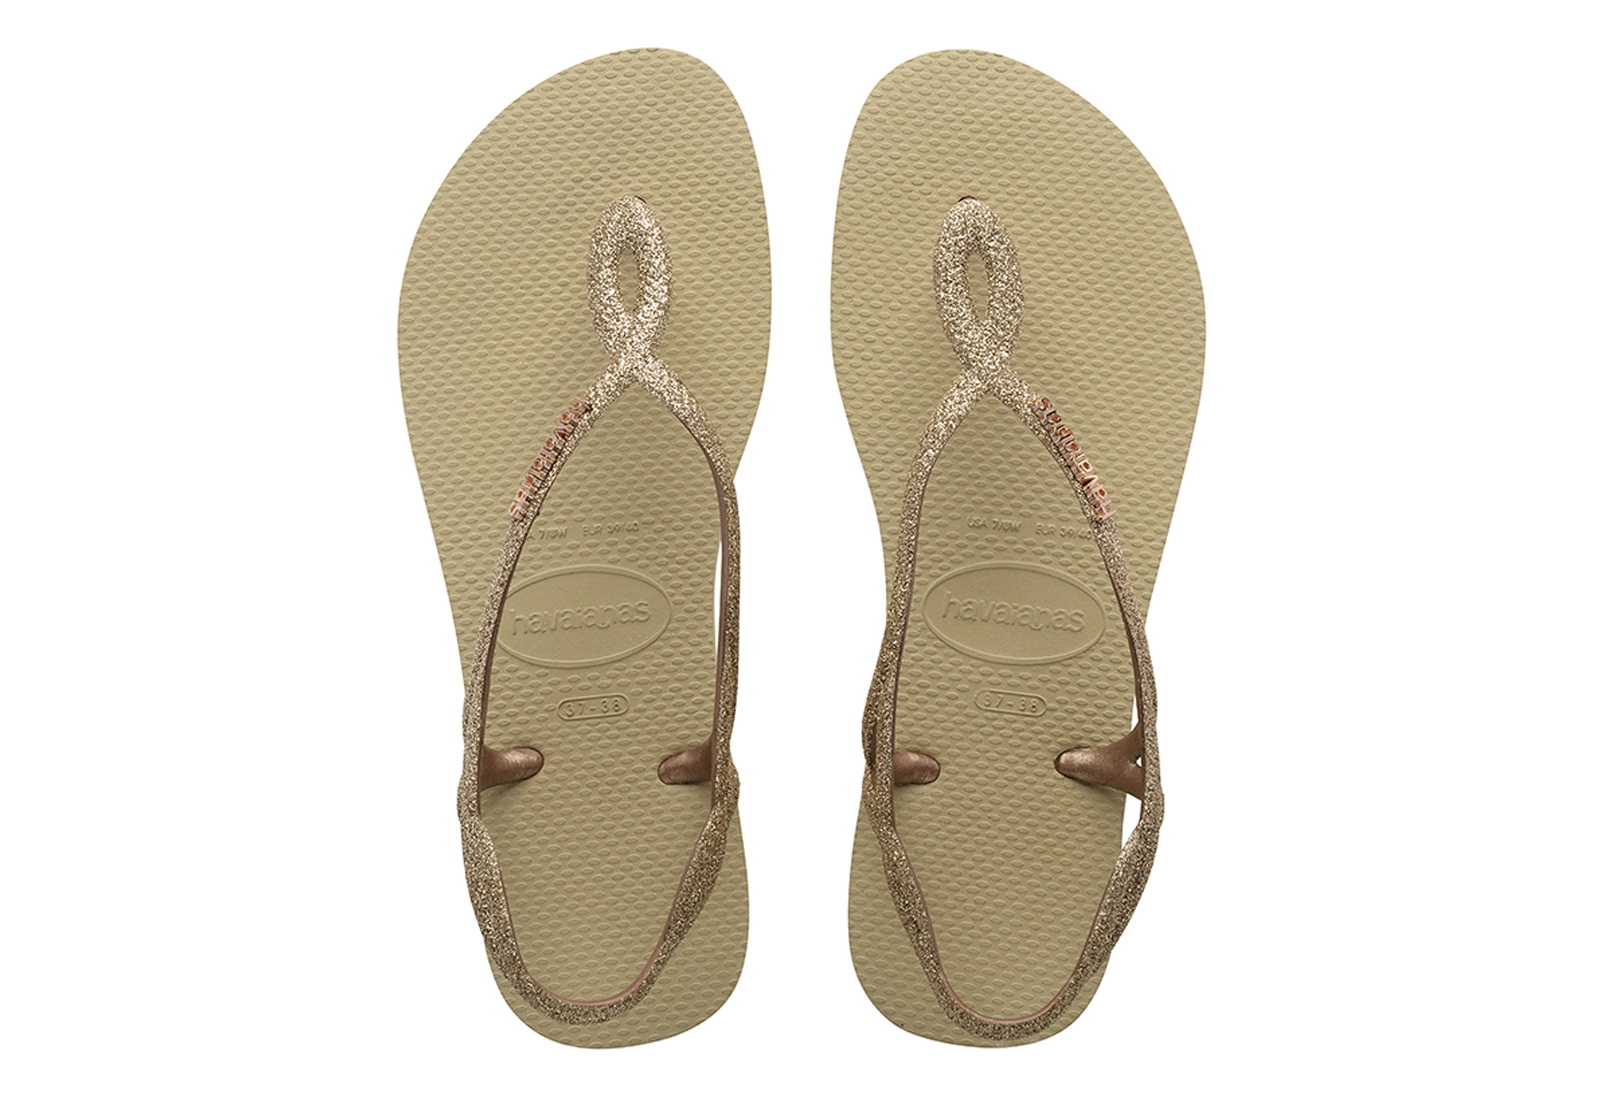 Short life Excrement moisture Havaianas Sandale - Luna Premium - 4146130-0154 - Office Shoes Romania